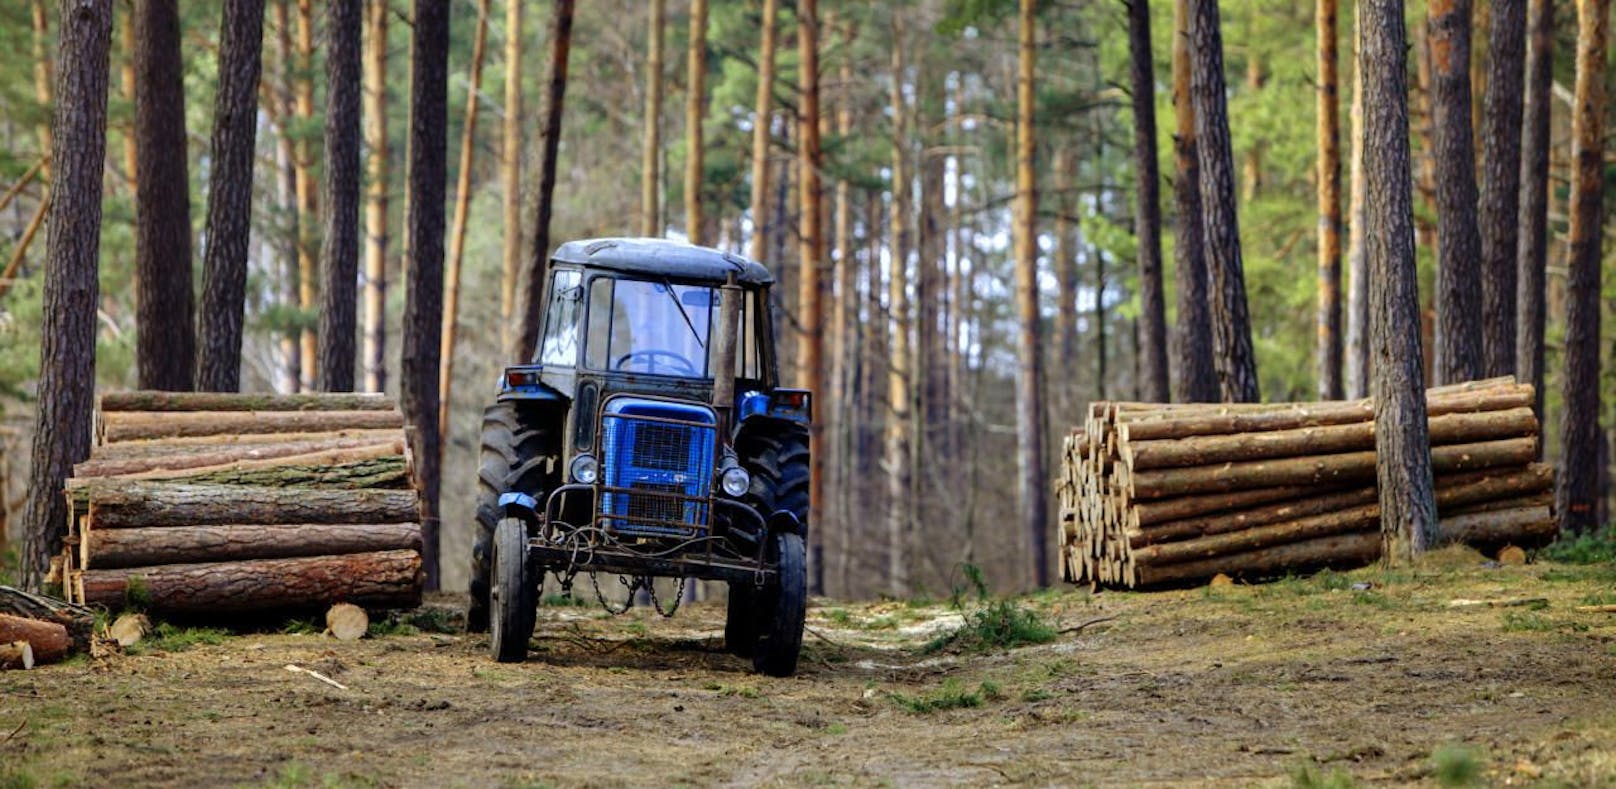 Symbolfoto eines Traktors im Wald.